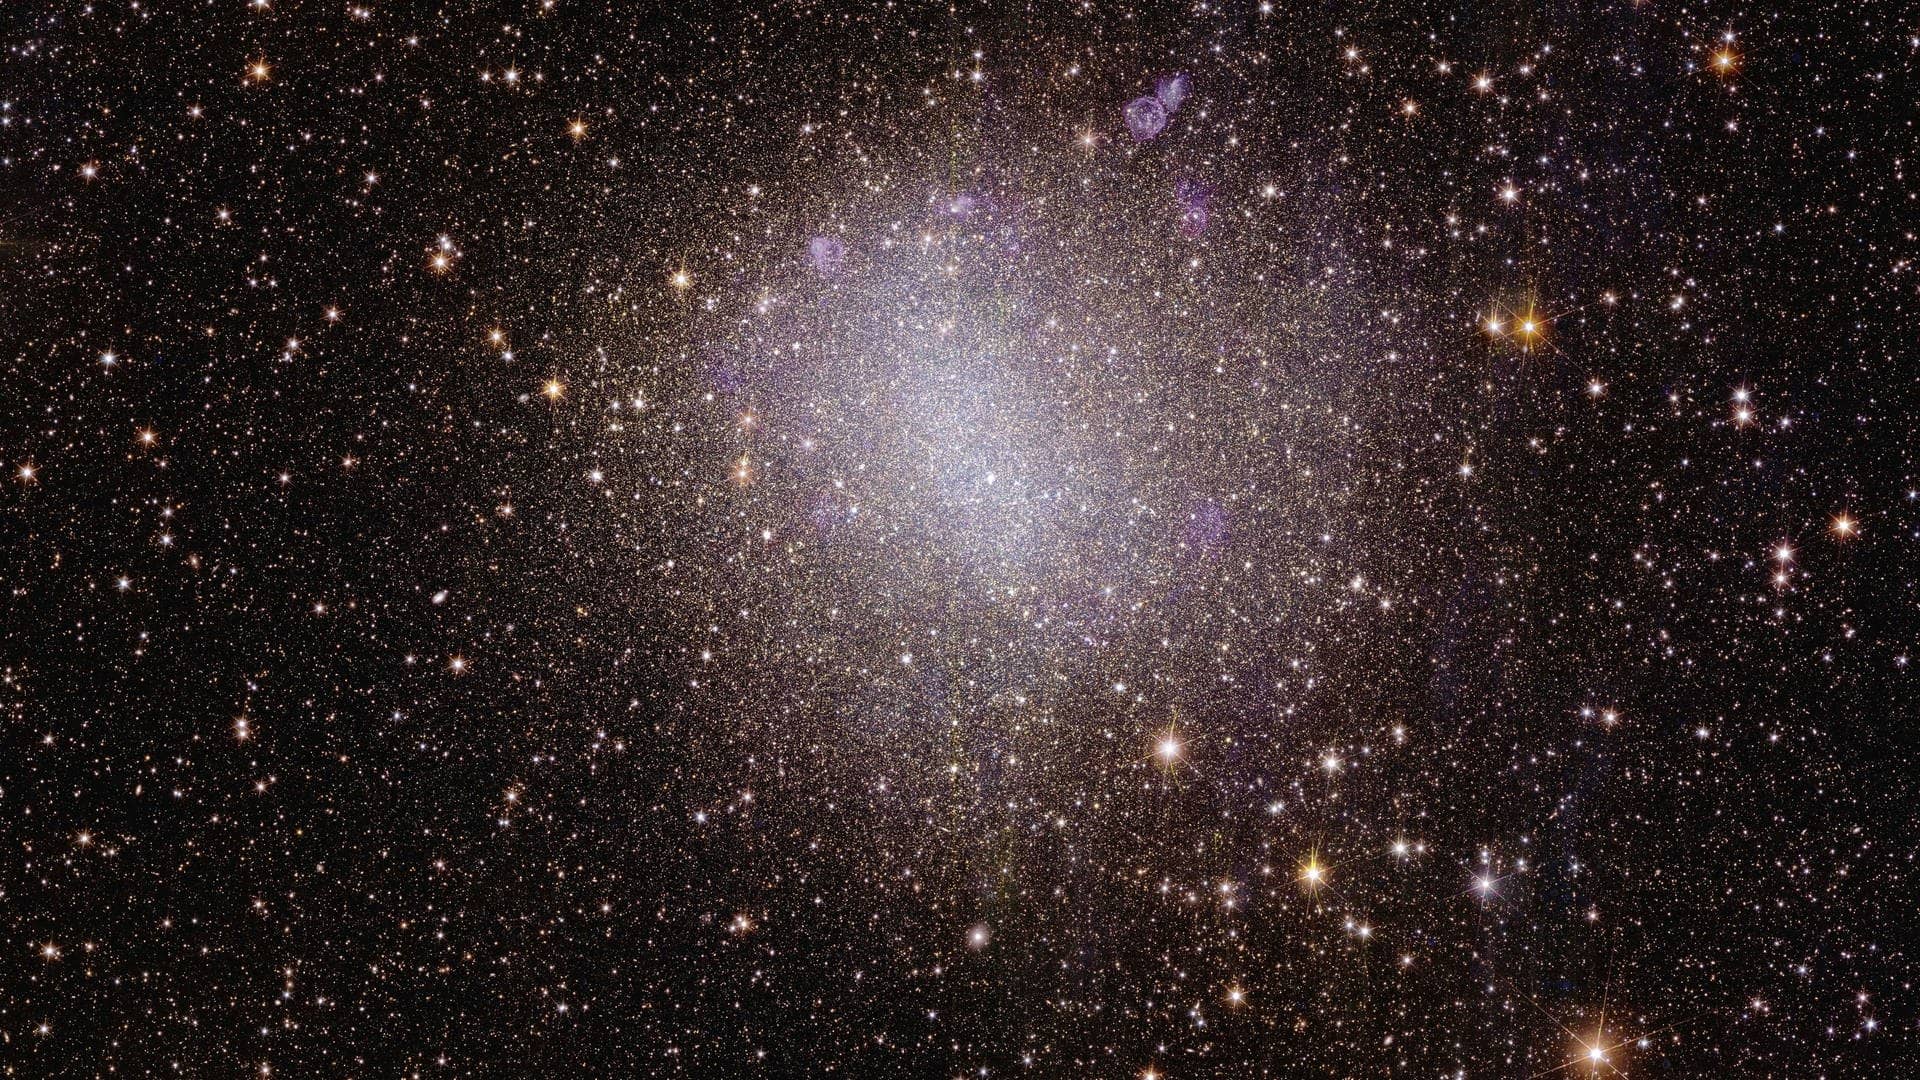 Und wir sind raus aus der Milchstraße. Was wir jetzt sehen, ist 1,6 Millionen Lichtjahre entfernt, aber so scharf, als wäre es nebenan: Die Zwerggalaxie NGC 6822, auch „Barnards Galaxie“ genannt. Warum „Zwerggalaxie"? Ihr Durchmesser von rund 8.000 Lichtjahren ist für eine Galaxie klein. Zum Vergleich: Unsere Milchstraße, die auch keine von den ganz Großen ist, hat einen Durchmesser von rund 100.000 Lichtjahren. 